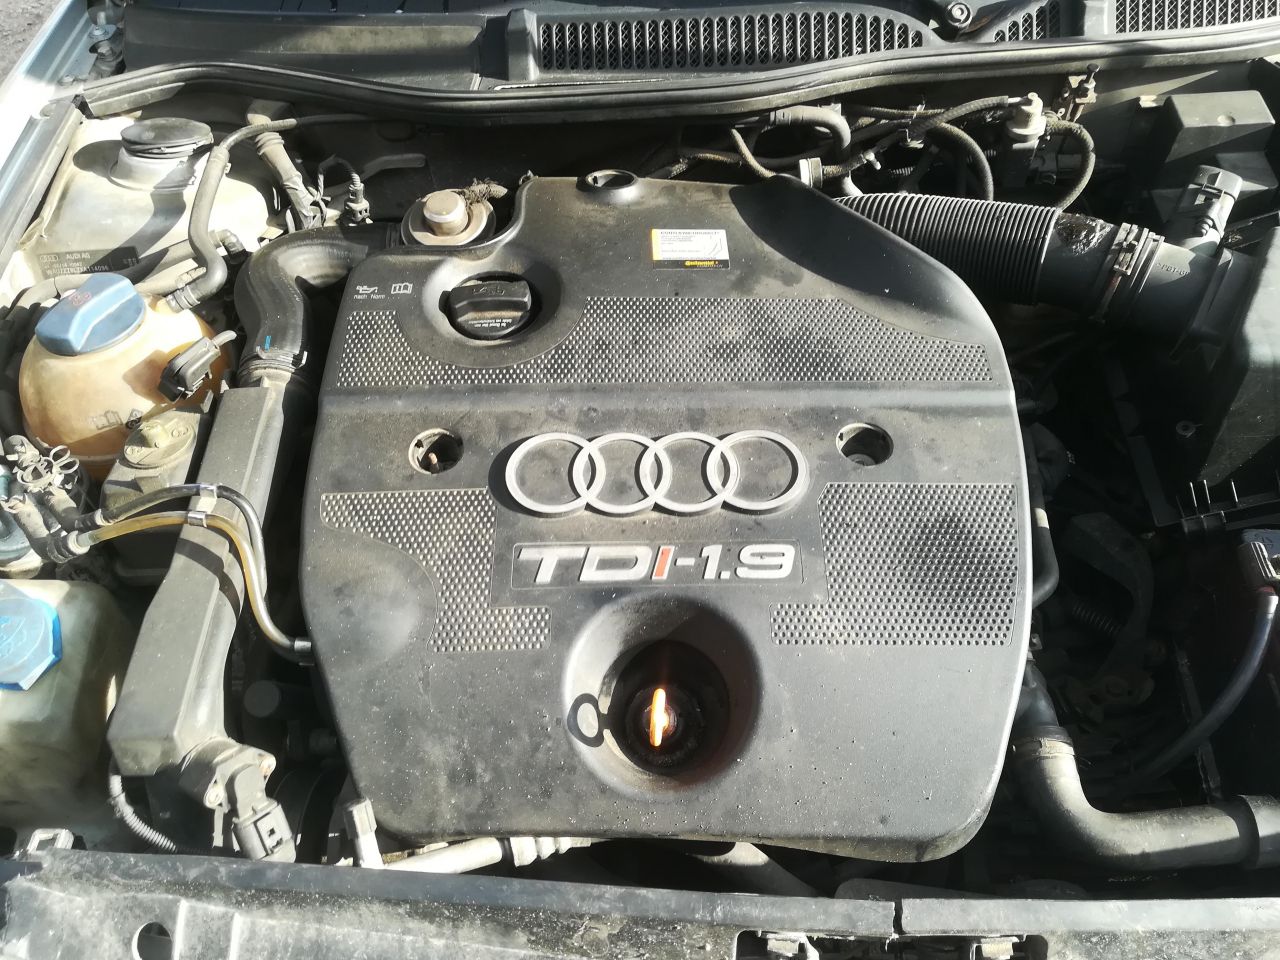 Audi, Hatchback | 1